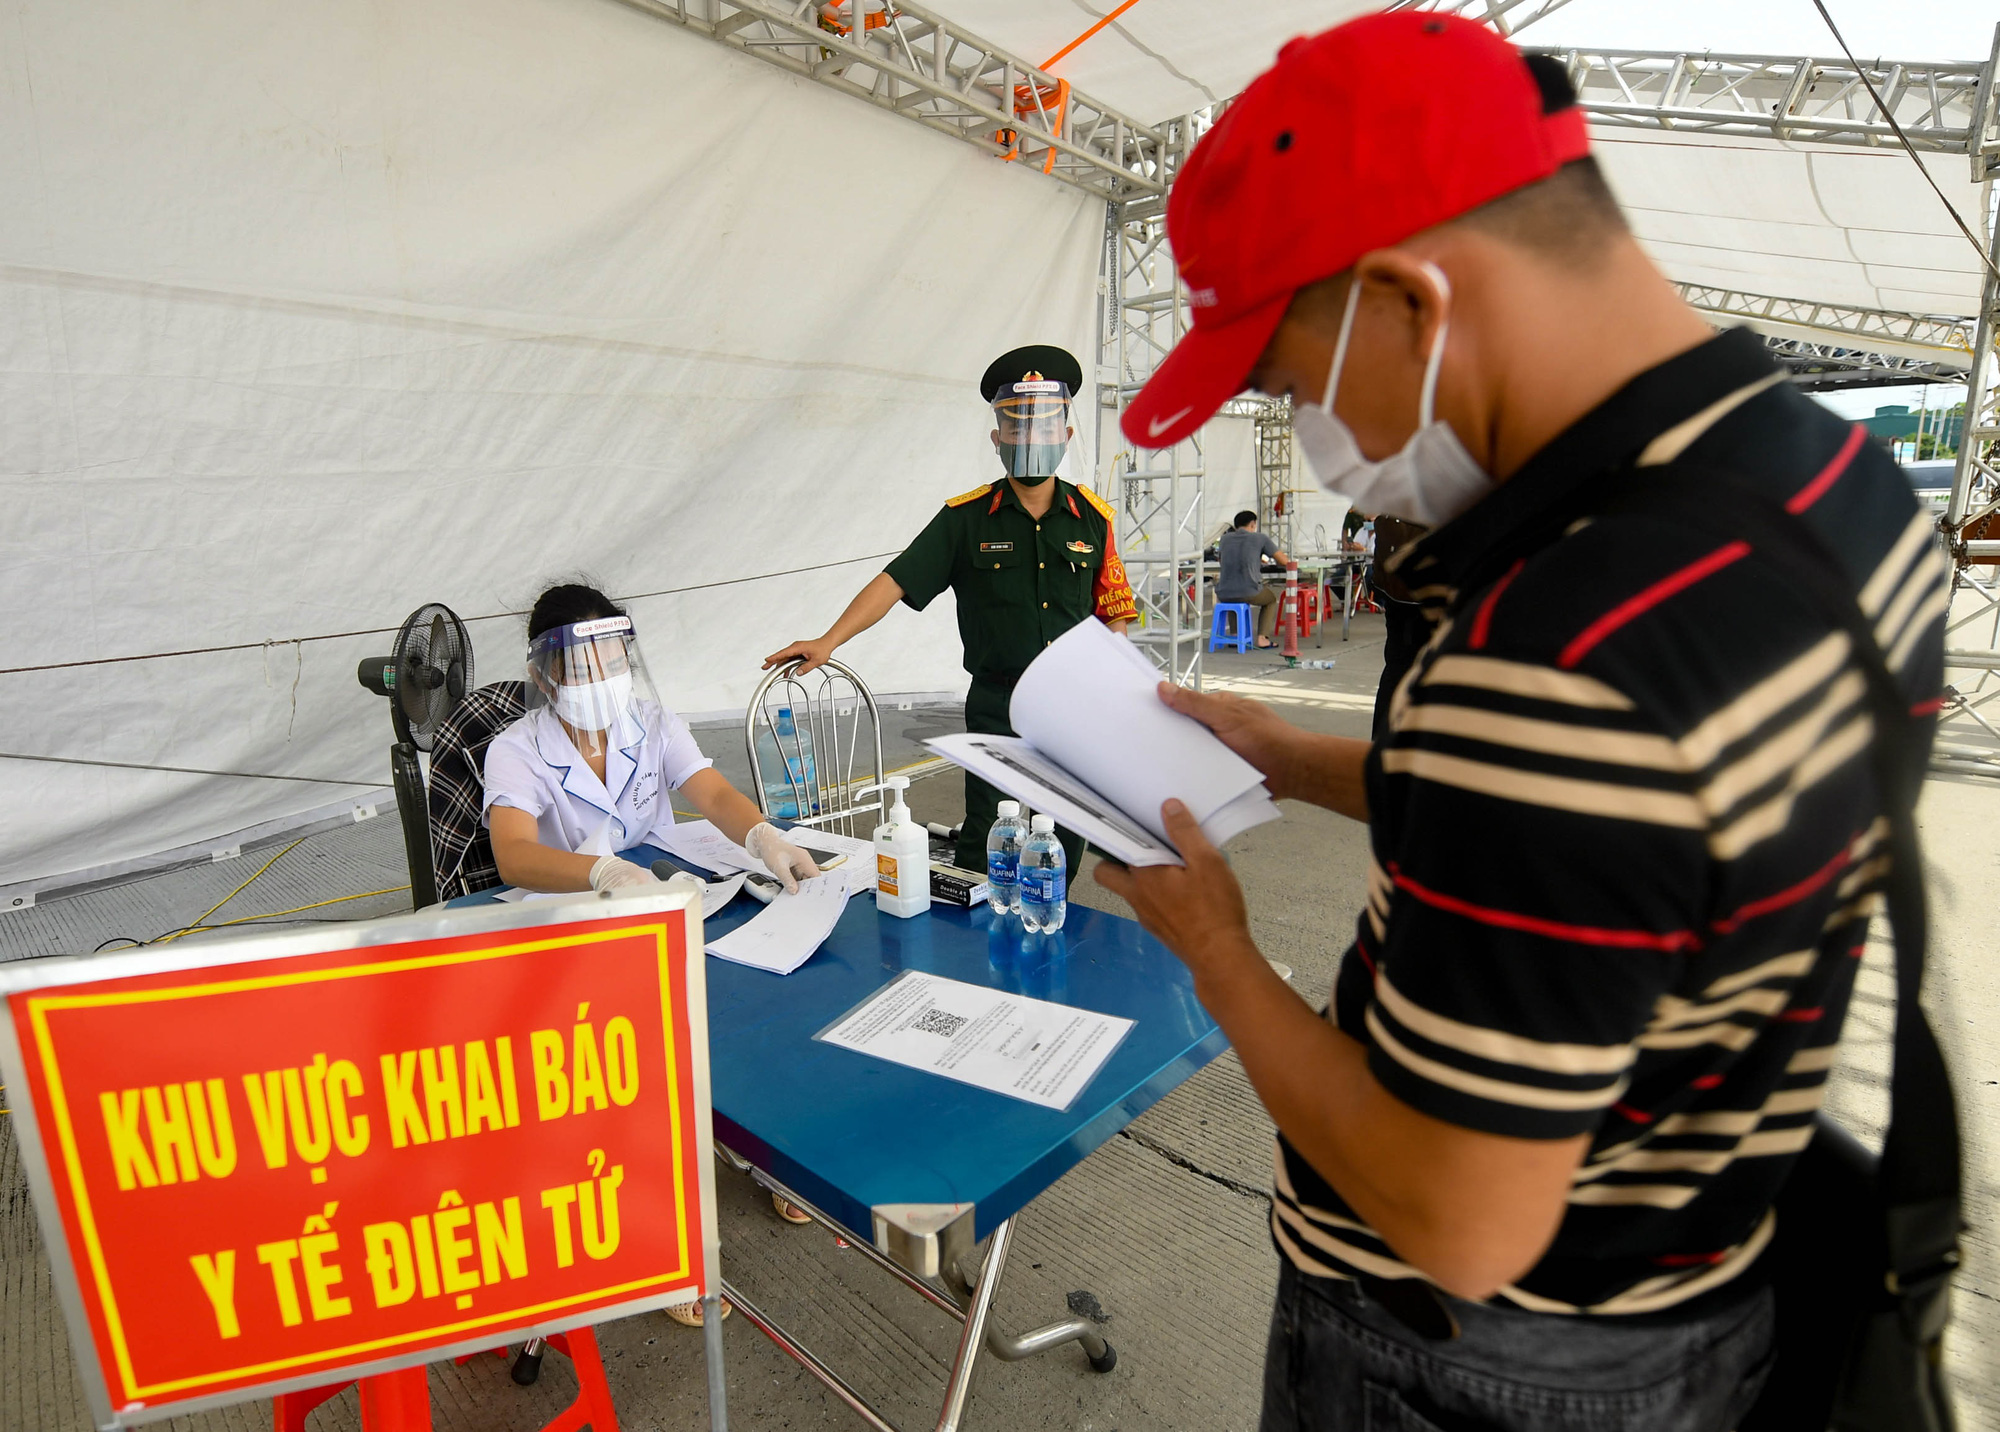 Việt Nam chính thức tạm dừng khai báo y tế nội địa